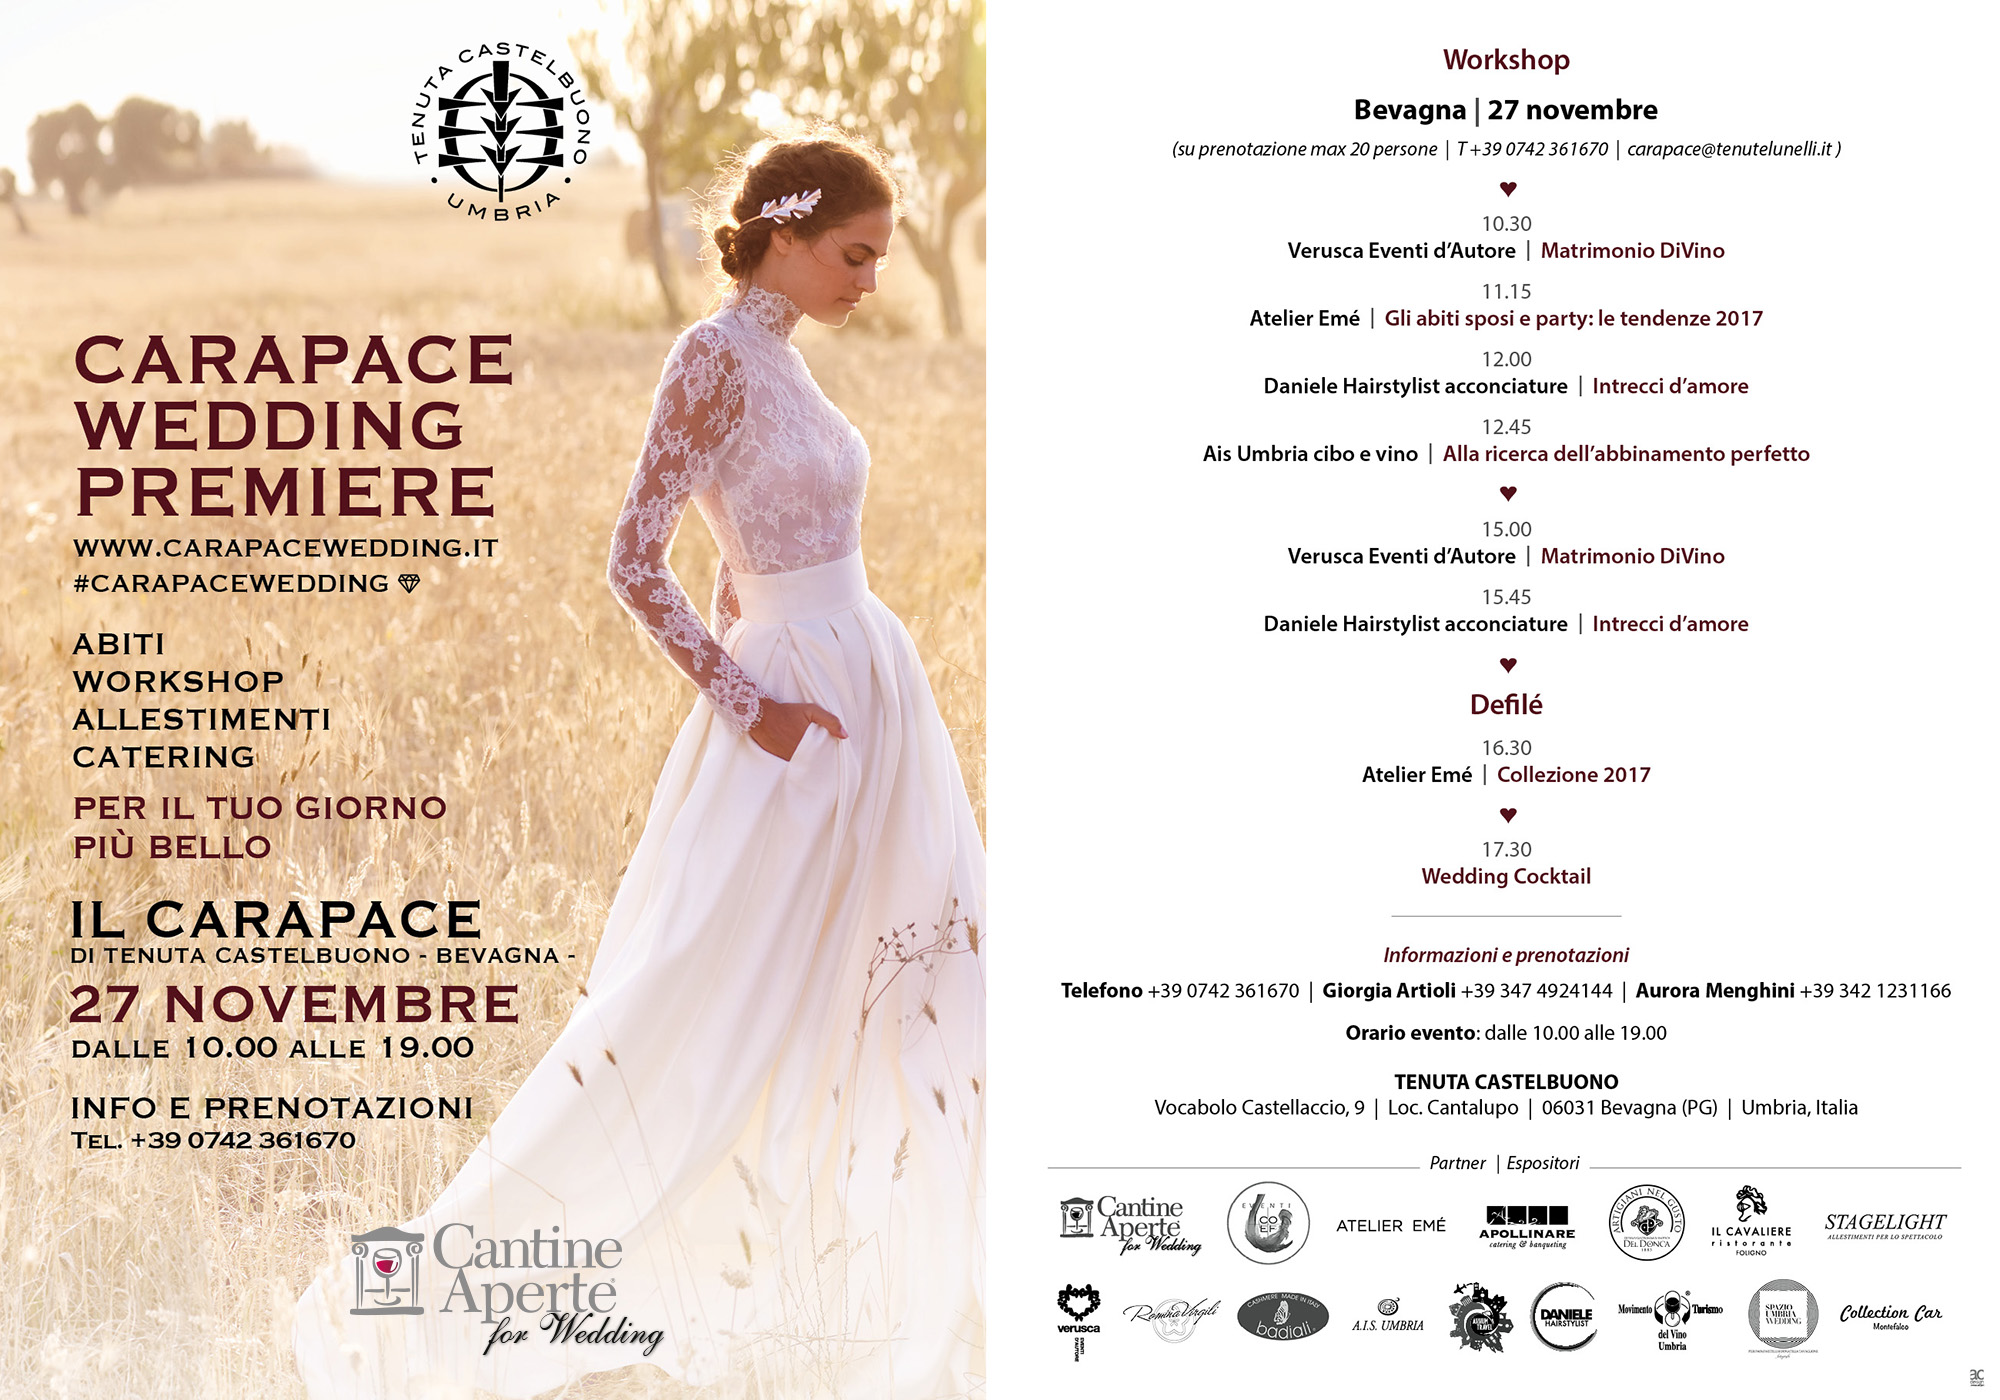 Carapace Wedding Première, l'evento dedicato al matrimonio, il 27 novembre alla Tenuta Castelbuono